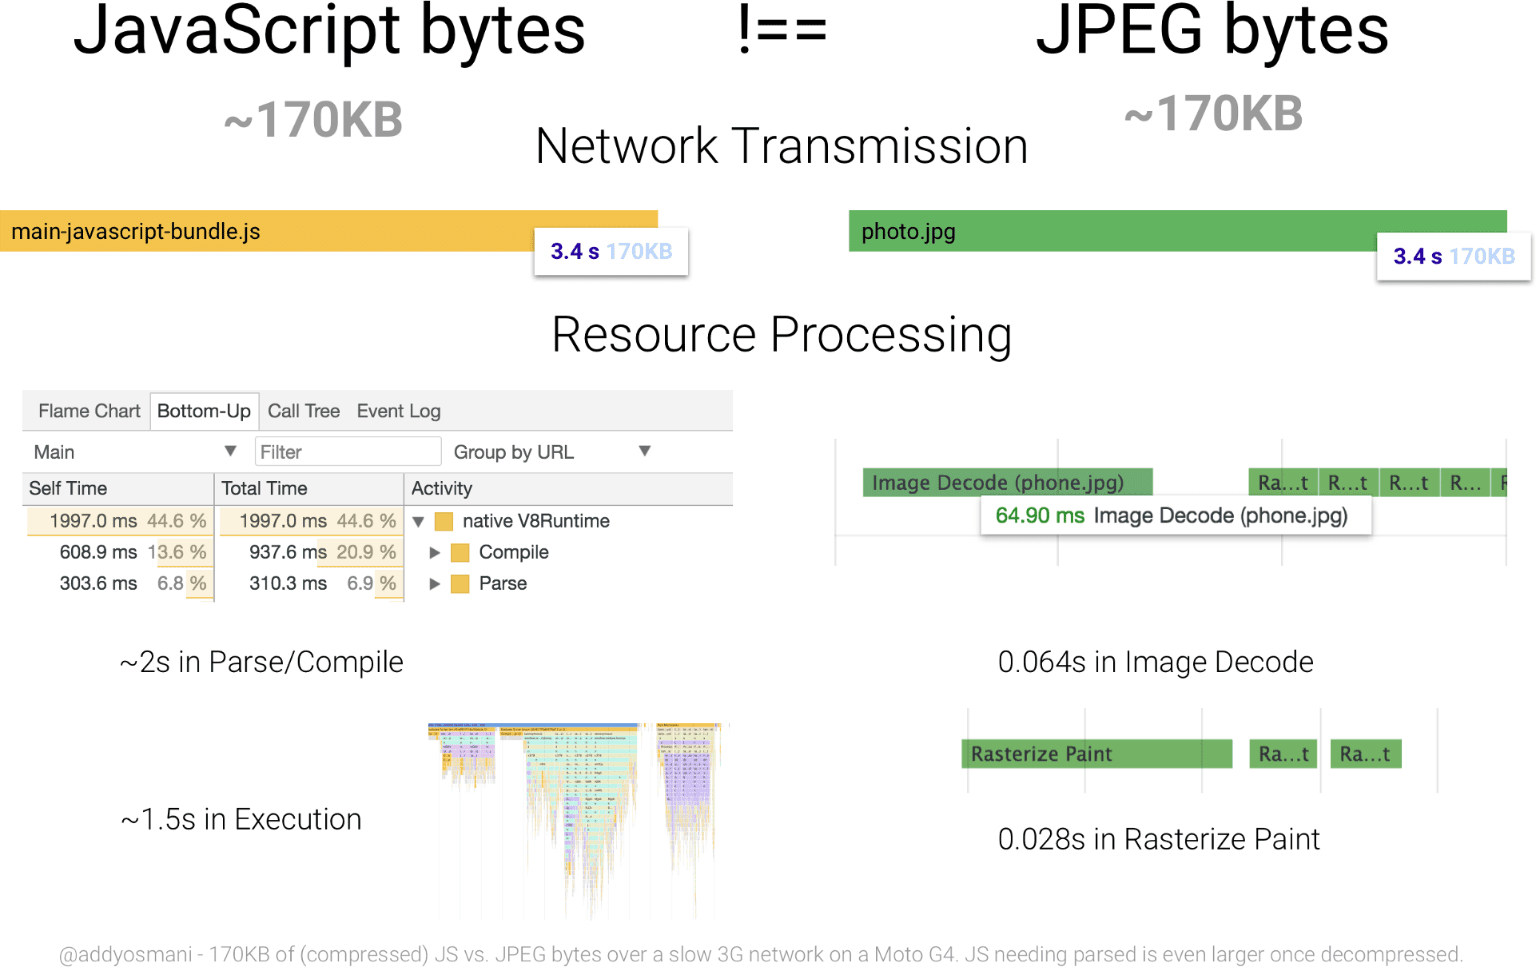 Diagram porównujący czas przetwarzania pliku JavaScript o wielkości 170 KB z obrazem JPEG o odpowiednim rozmiarze. Zasób JavaScript wymaga dużo więcej zasobów na bajty niż JPEG.